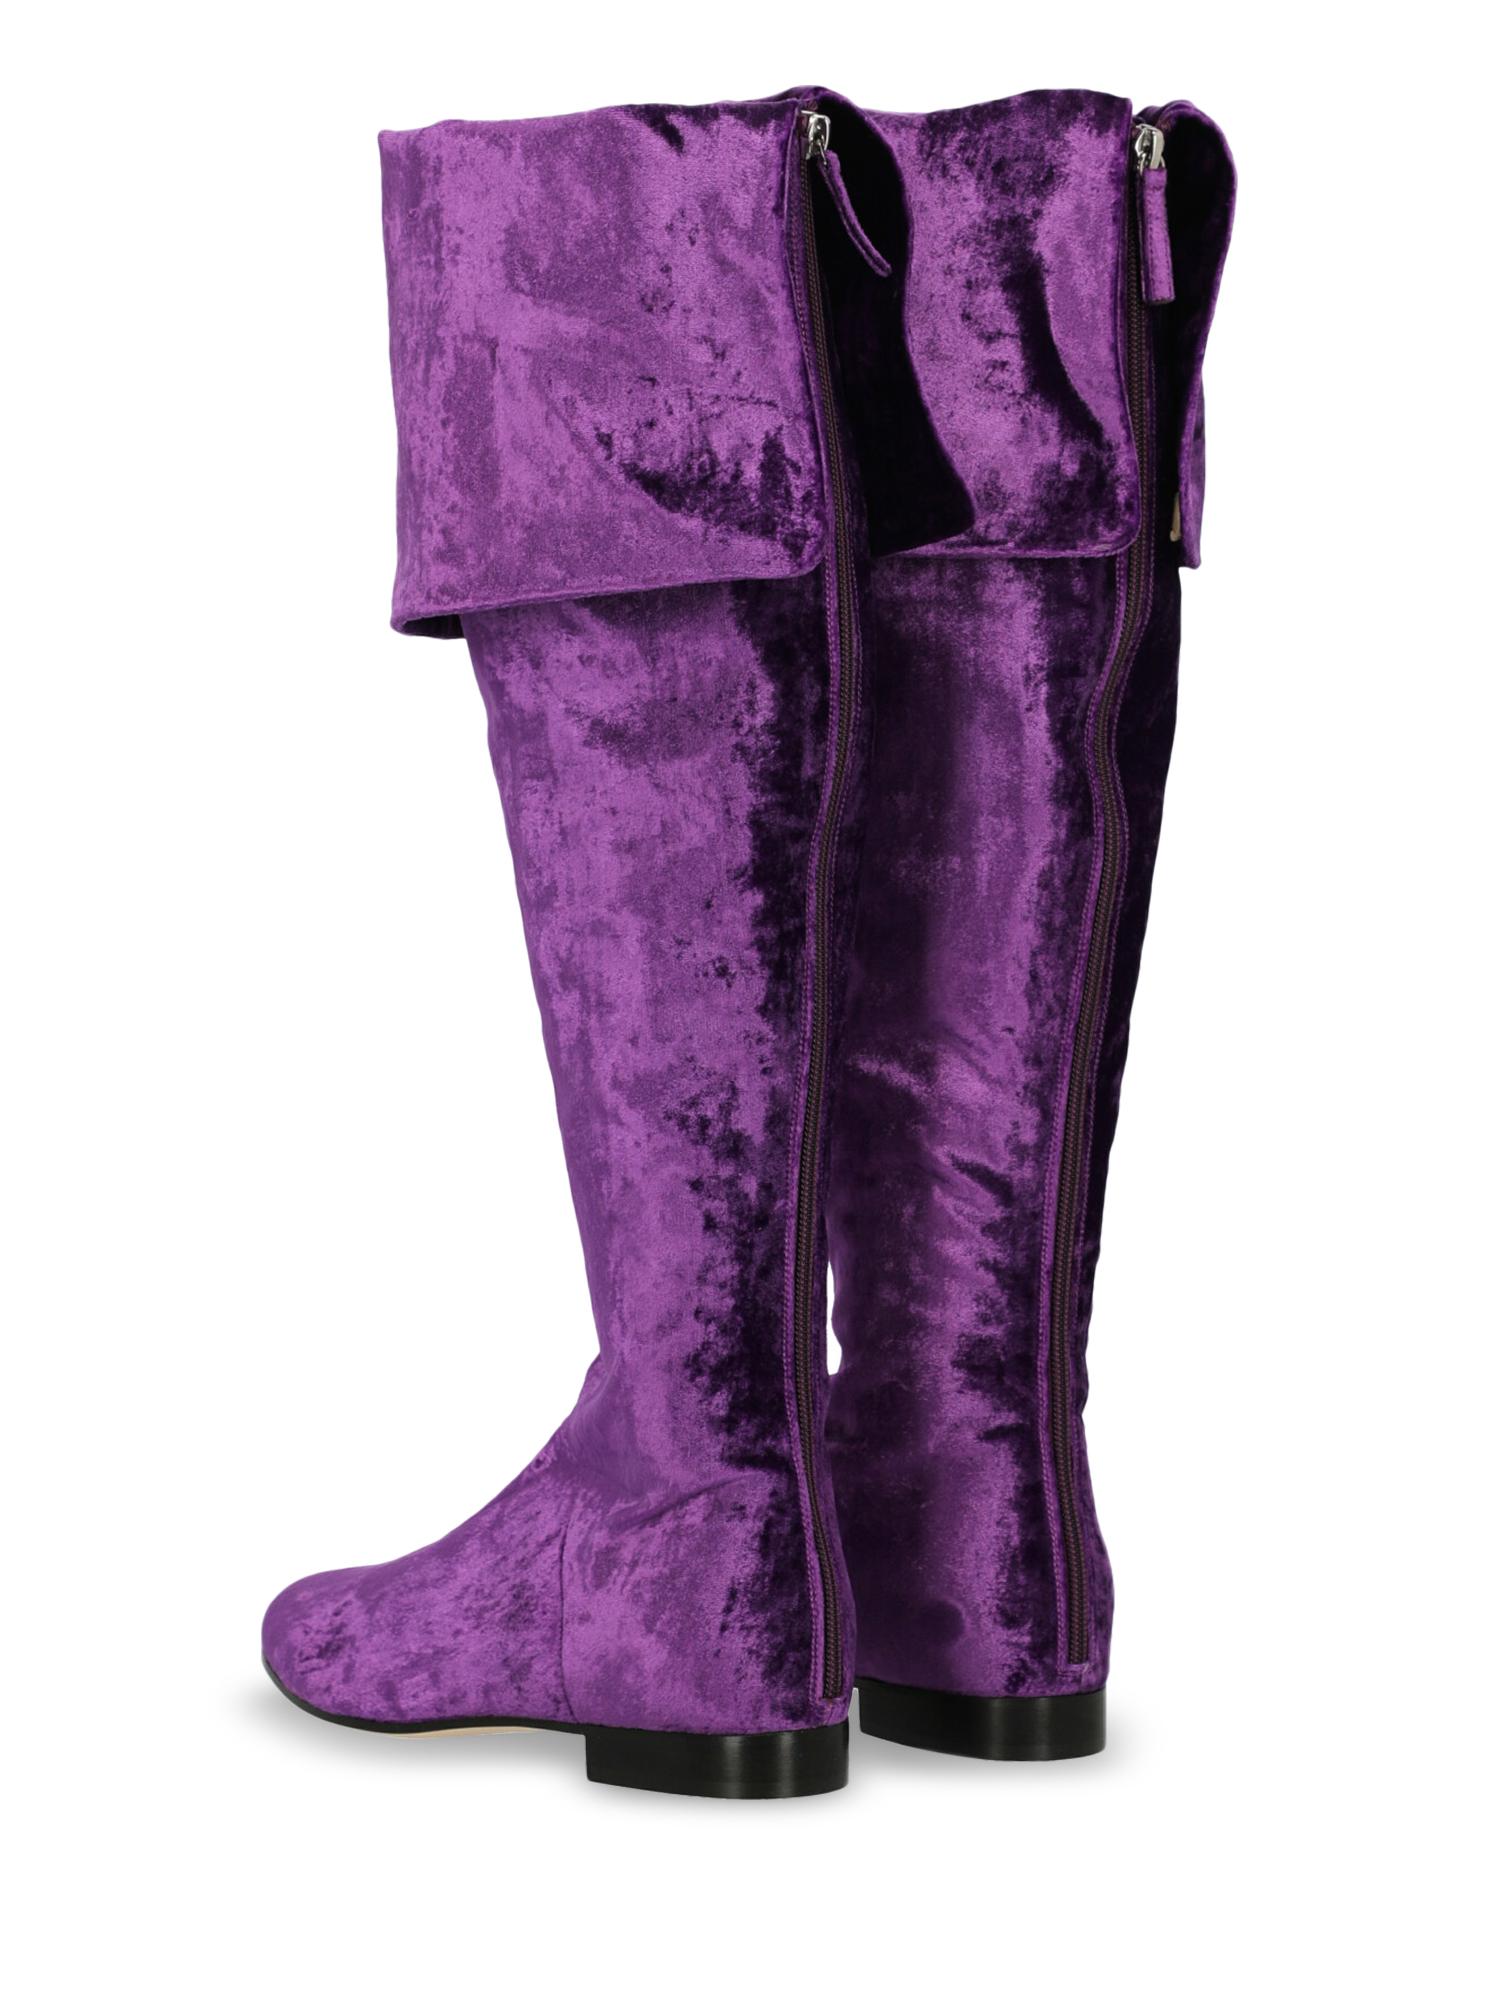 Alberta Ferretti Woman Boots Purple EU 37 In Excellent Condition For Sale In Milan, IT